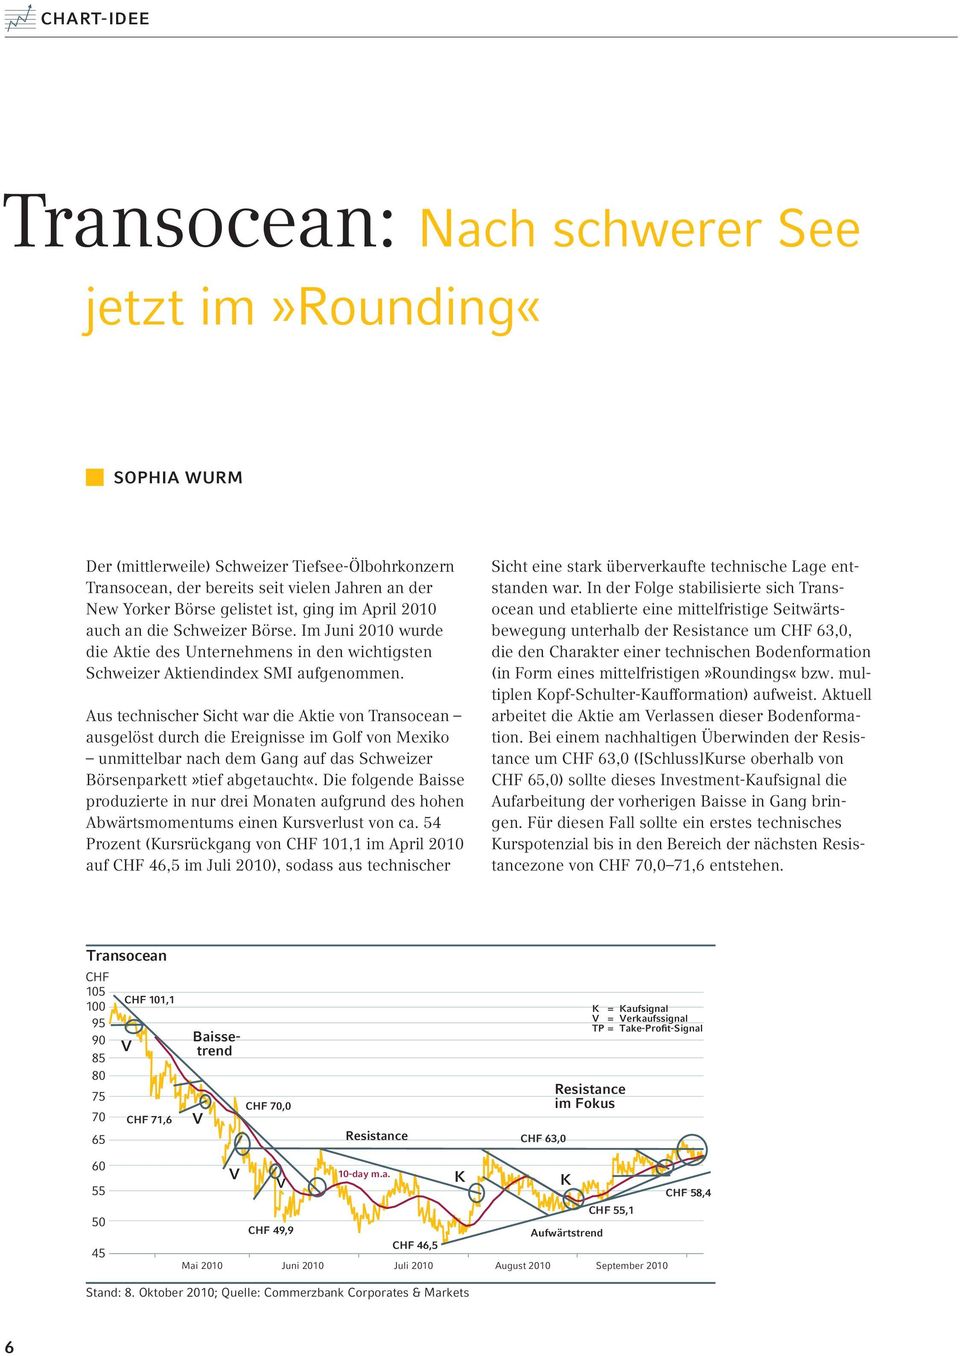 Aus technischer Sicht war die Aktie von Transocean ausgelöst durch die Ereignisse im Golf von Mexiko unmittelbar nach dem Gang auf das Schweizer Börsenparkett»tief abgetaucht«.